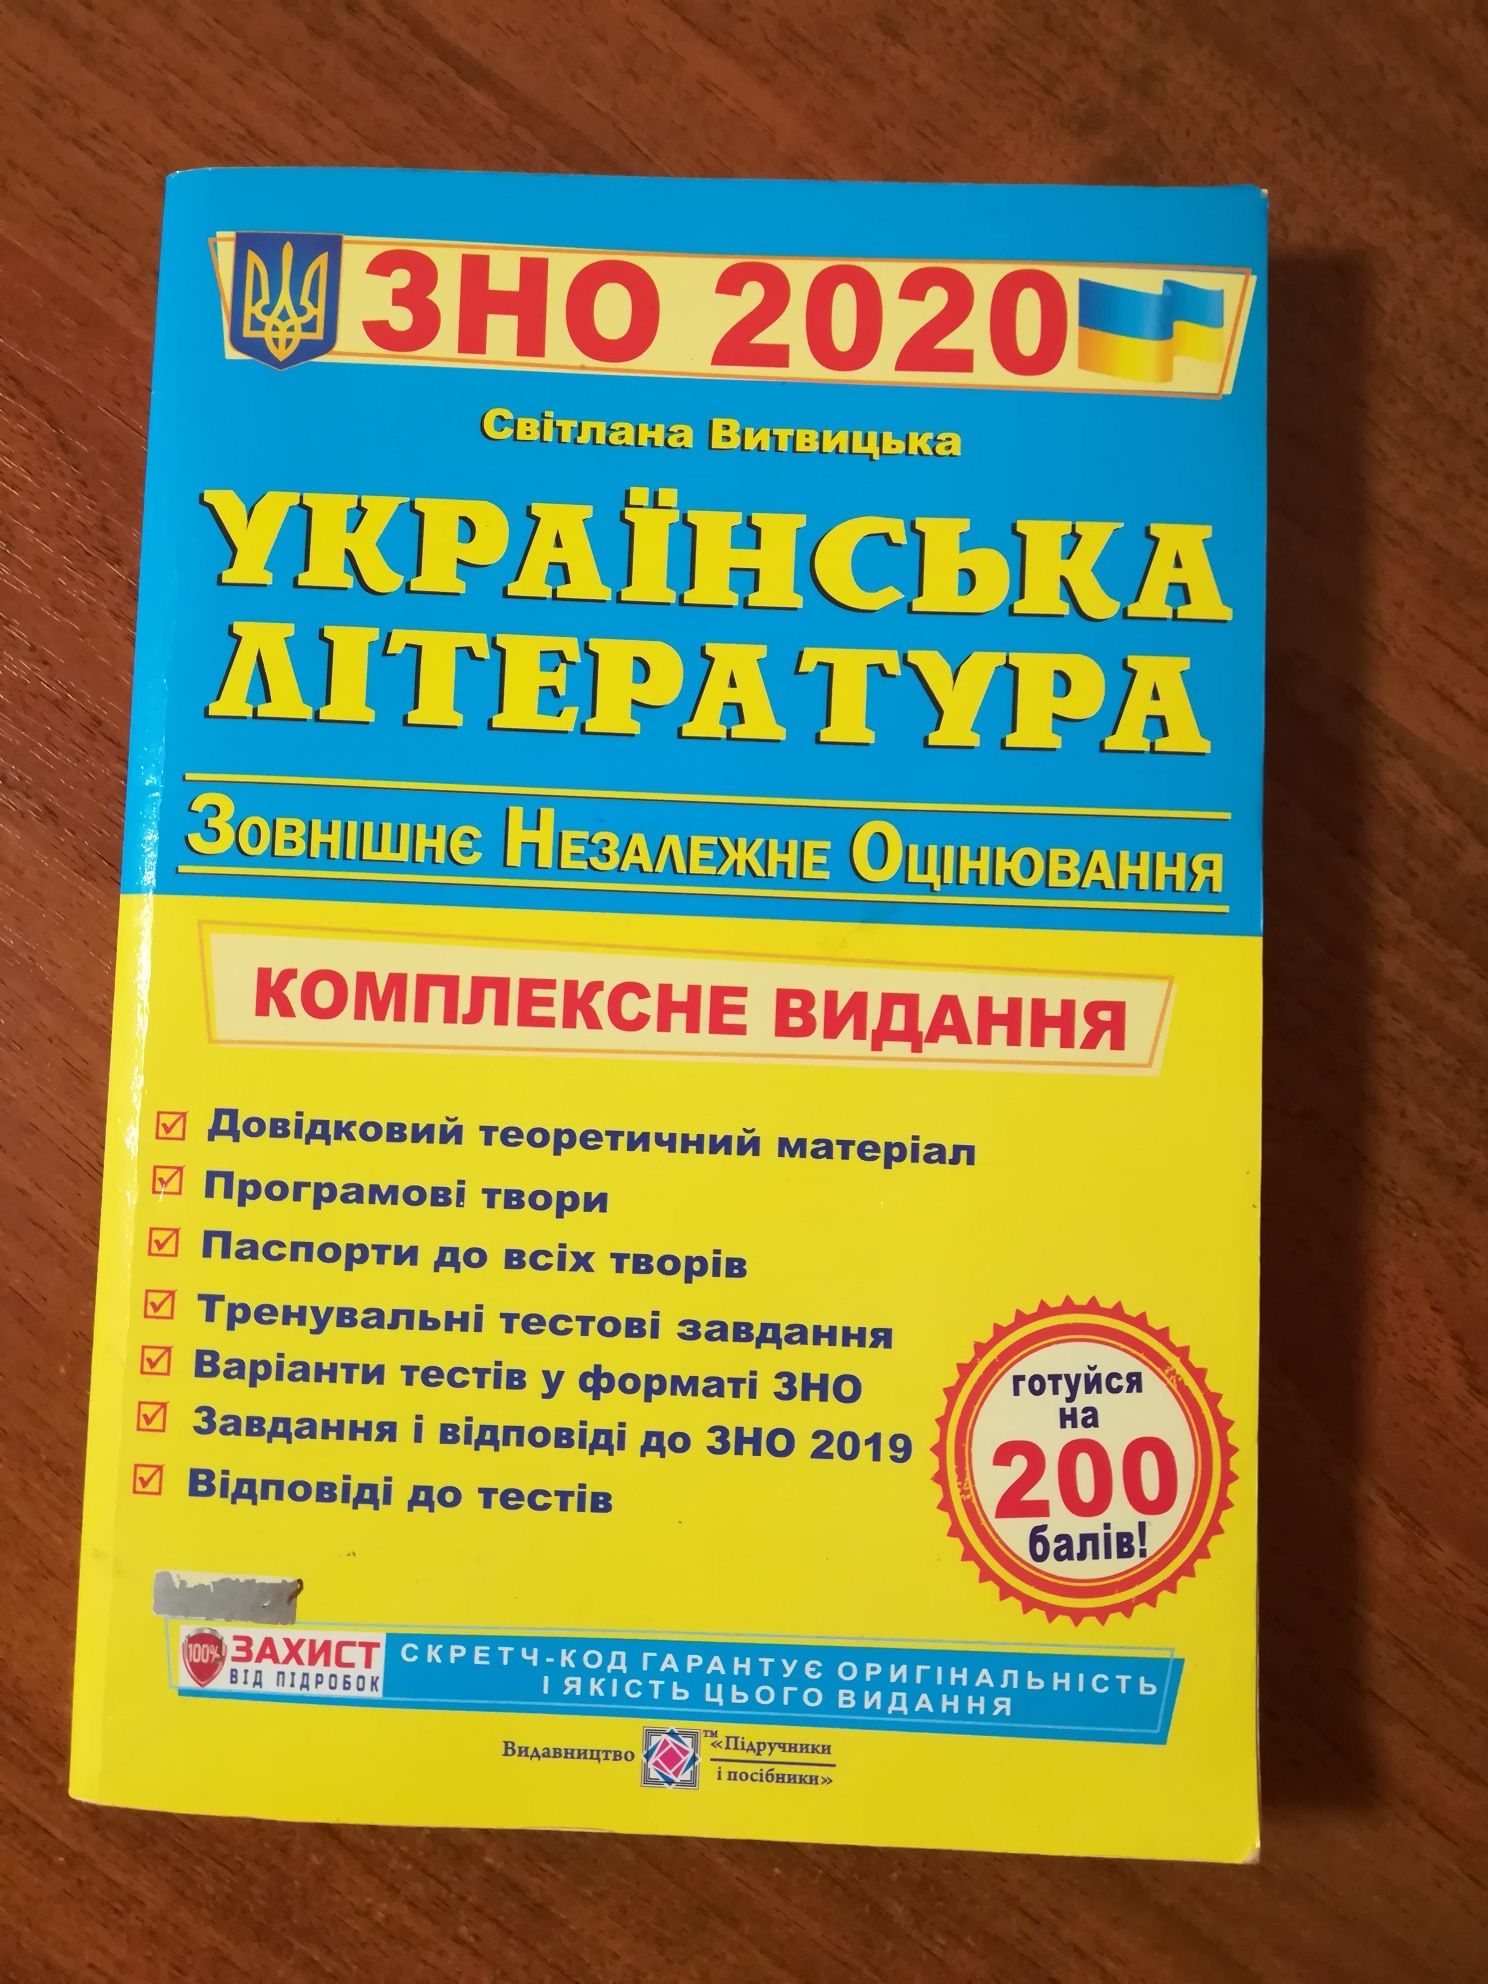 ЗНО по украинской литературе 2020